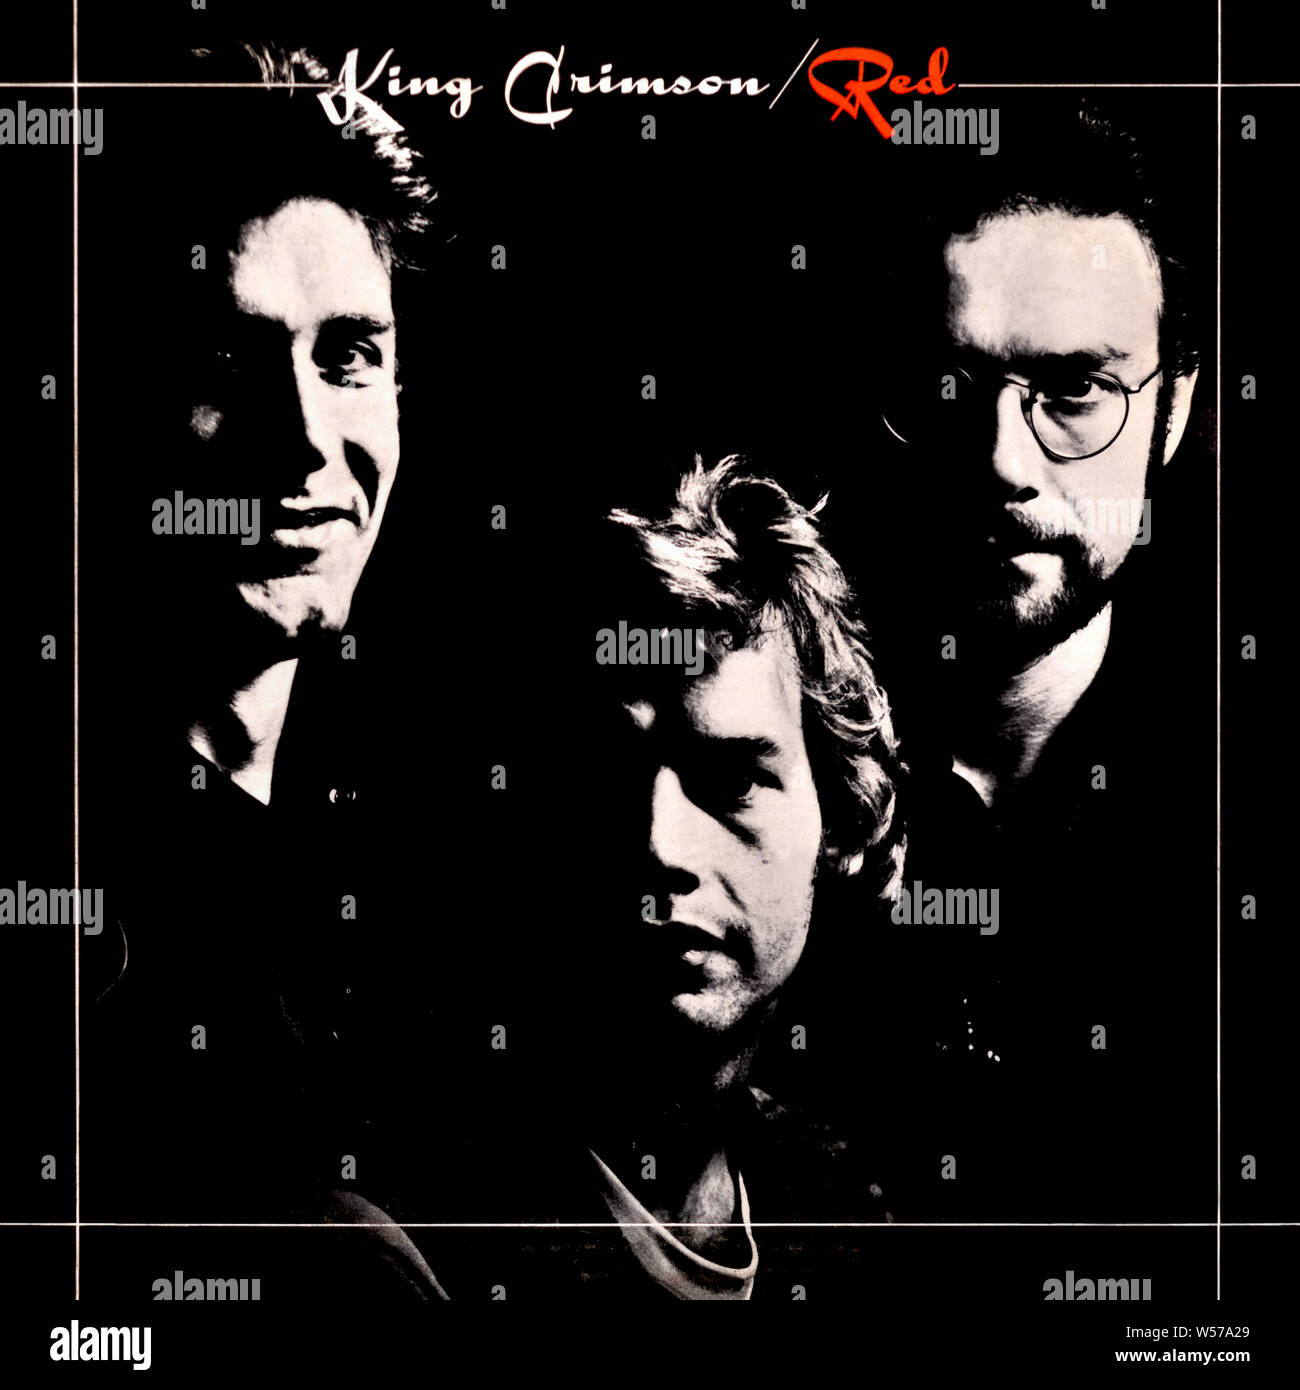 King Crimson - original vinyl album cover - Red - 1974 Stock Photo